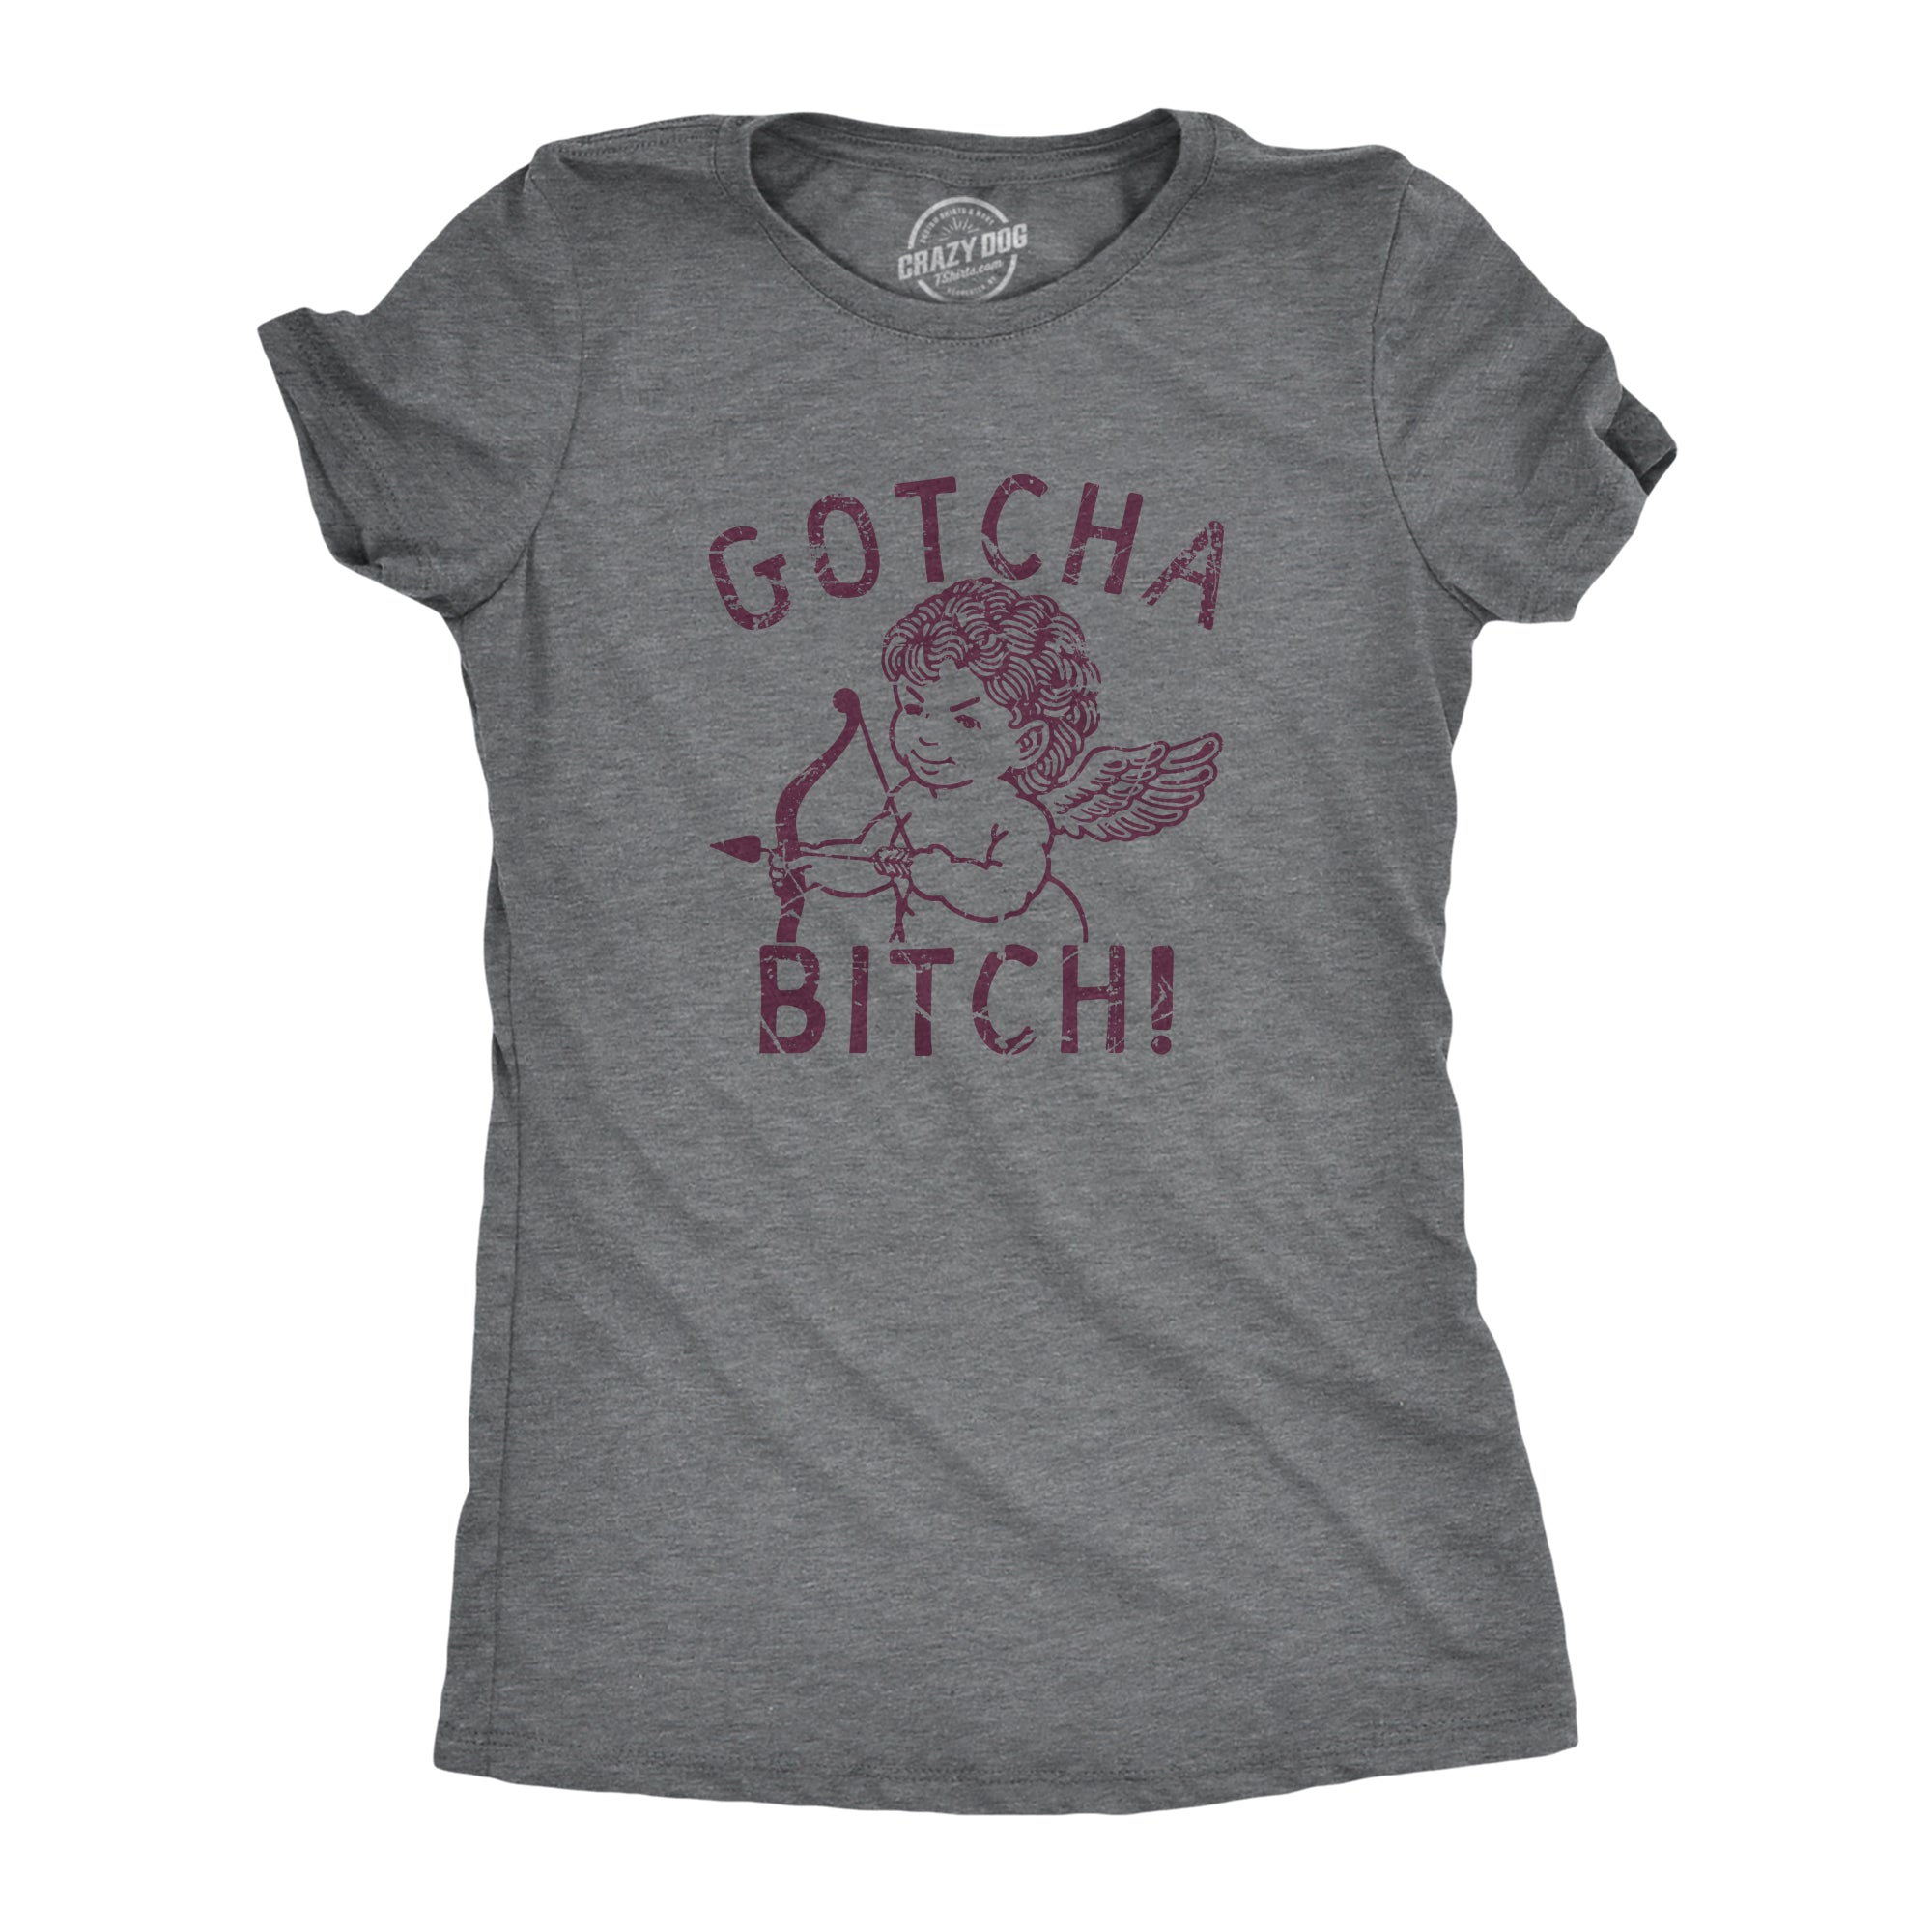 Funny Dark Heather Grey - GOTCHA Gotcha Bitch Womens T Shirt Nerdy Valentine's Day Sarcastic Tee